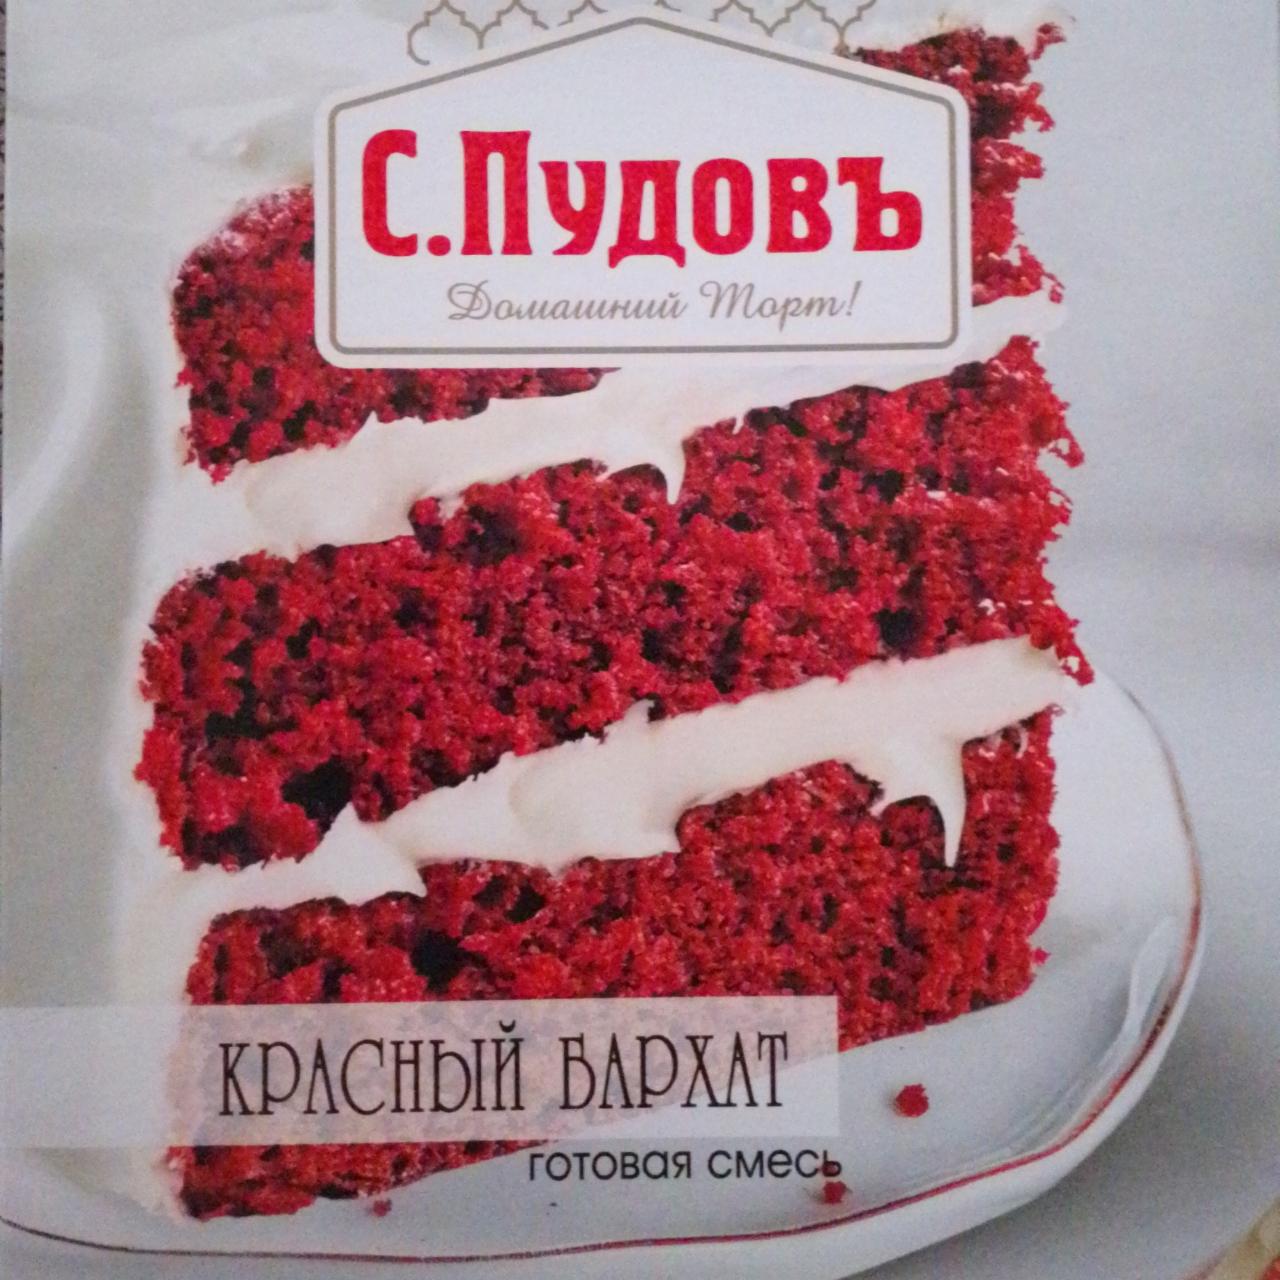 Фото - Мучная смесь торт красный бархат С.Пудовъ